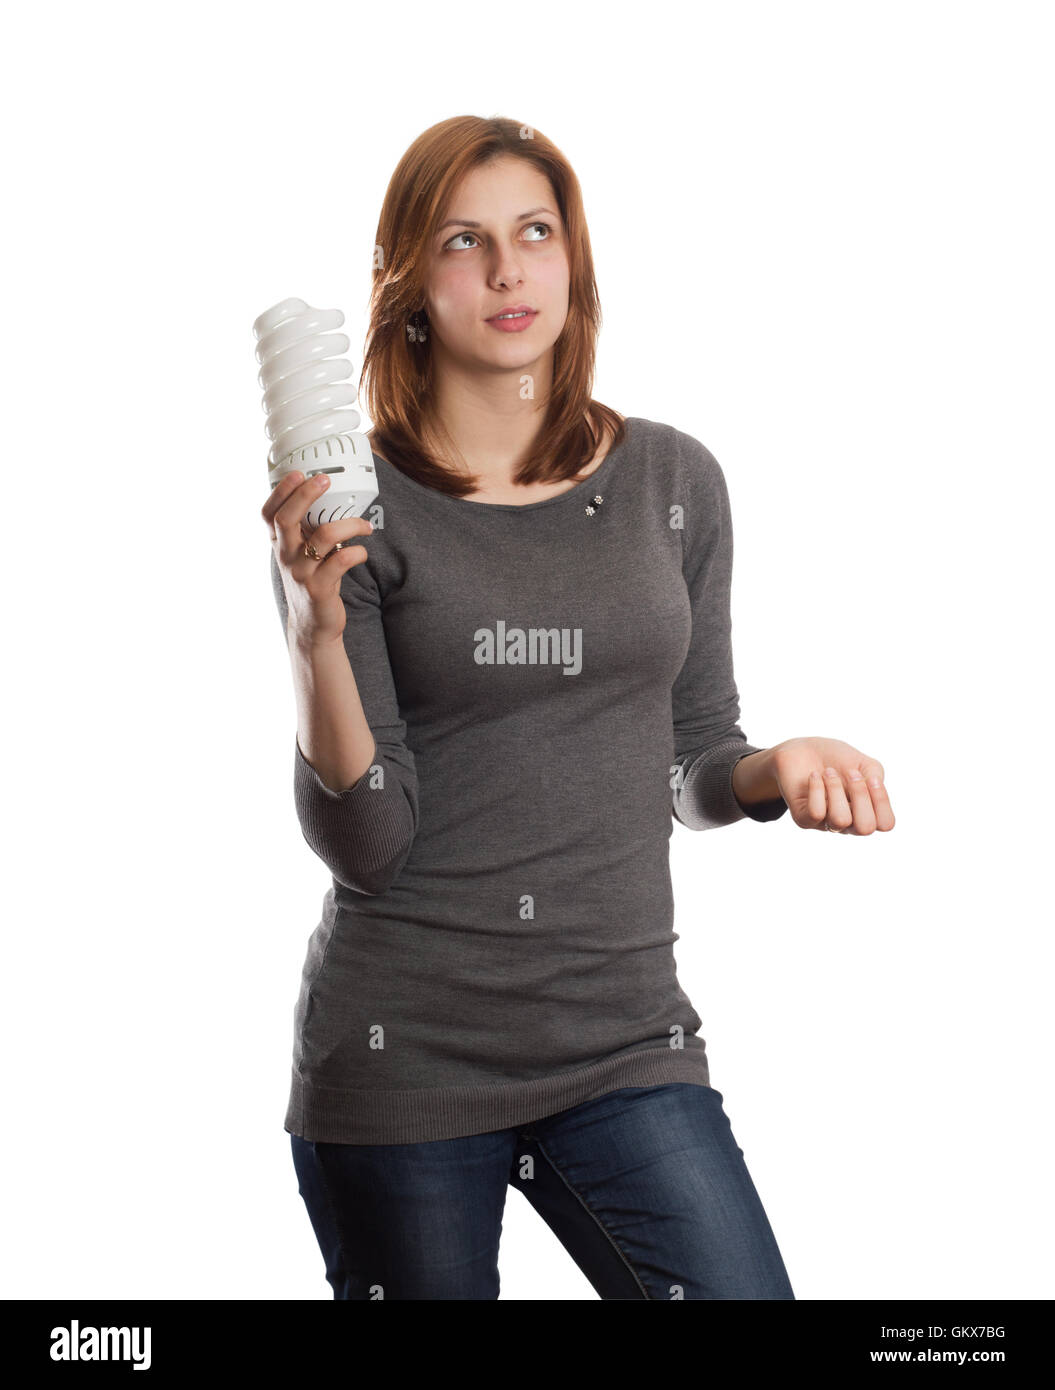 Atractiva Chica sujetando un tubo fluorescente Foto de stock